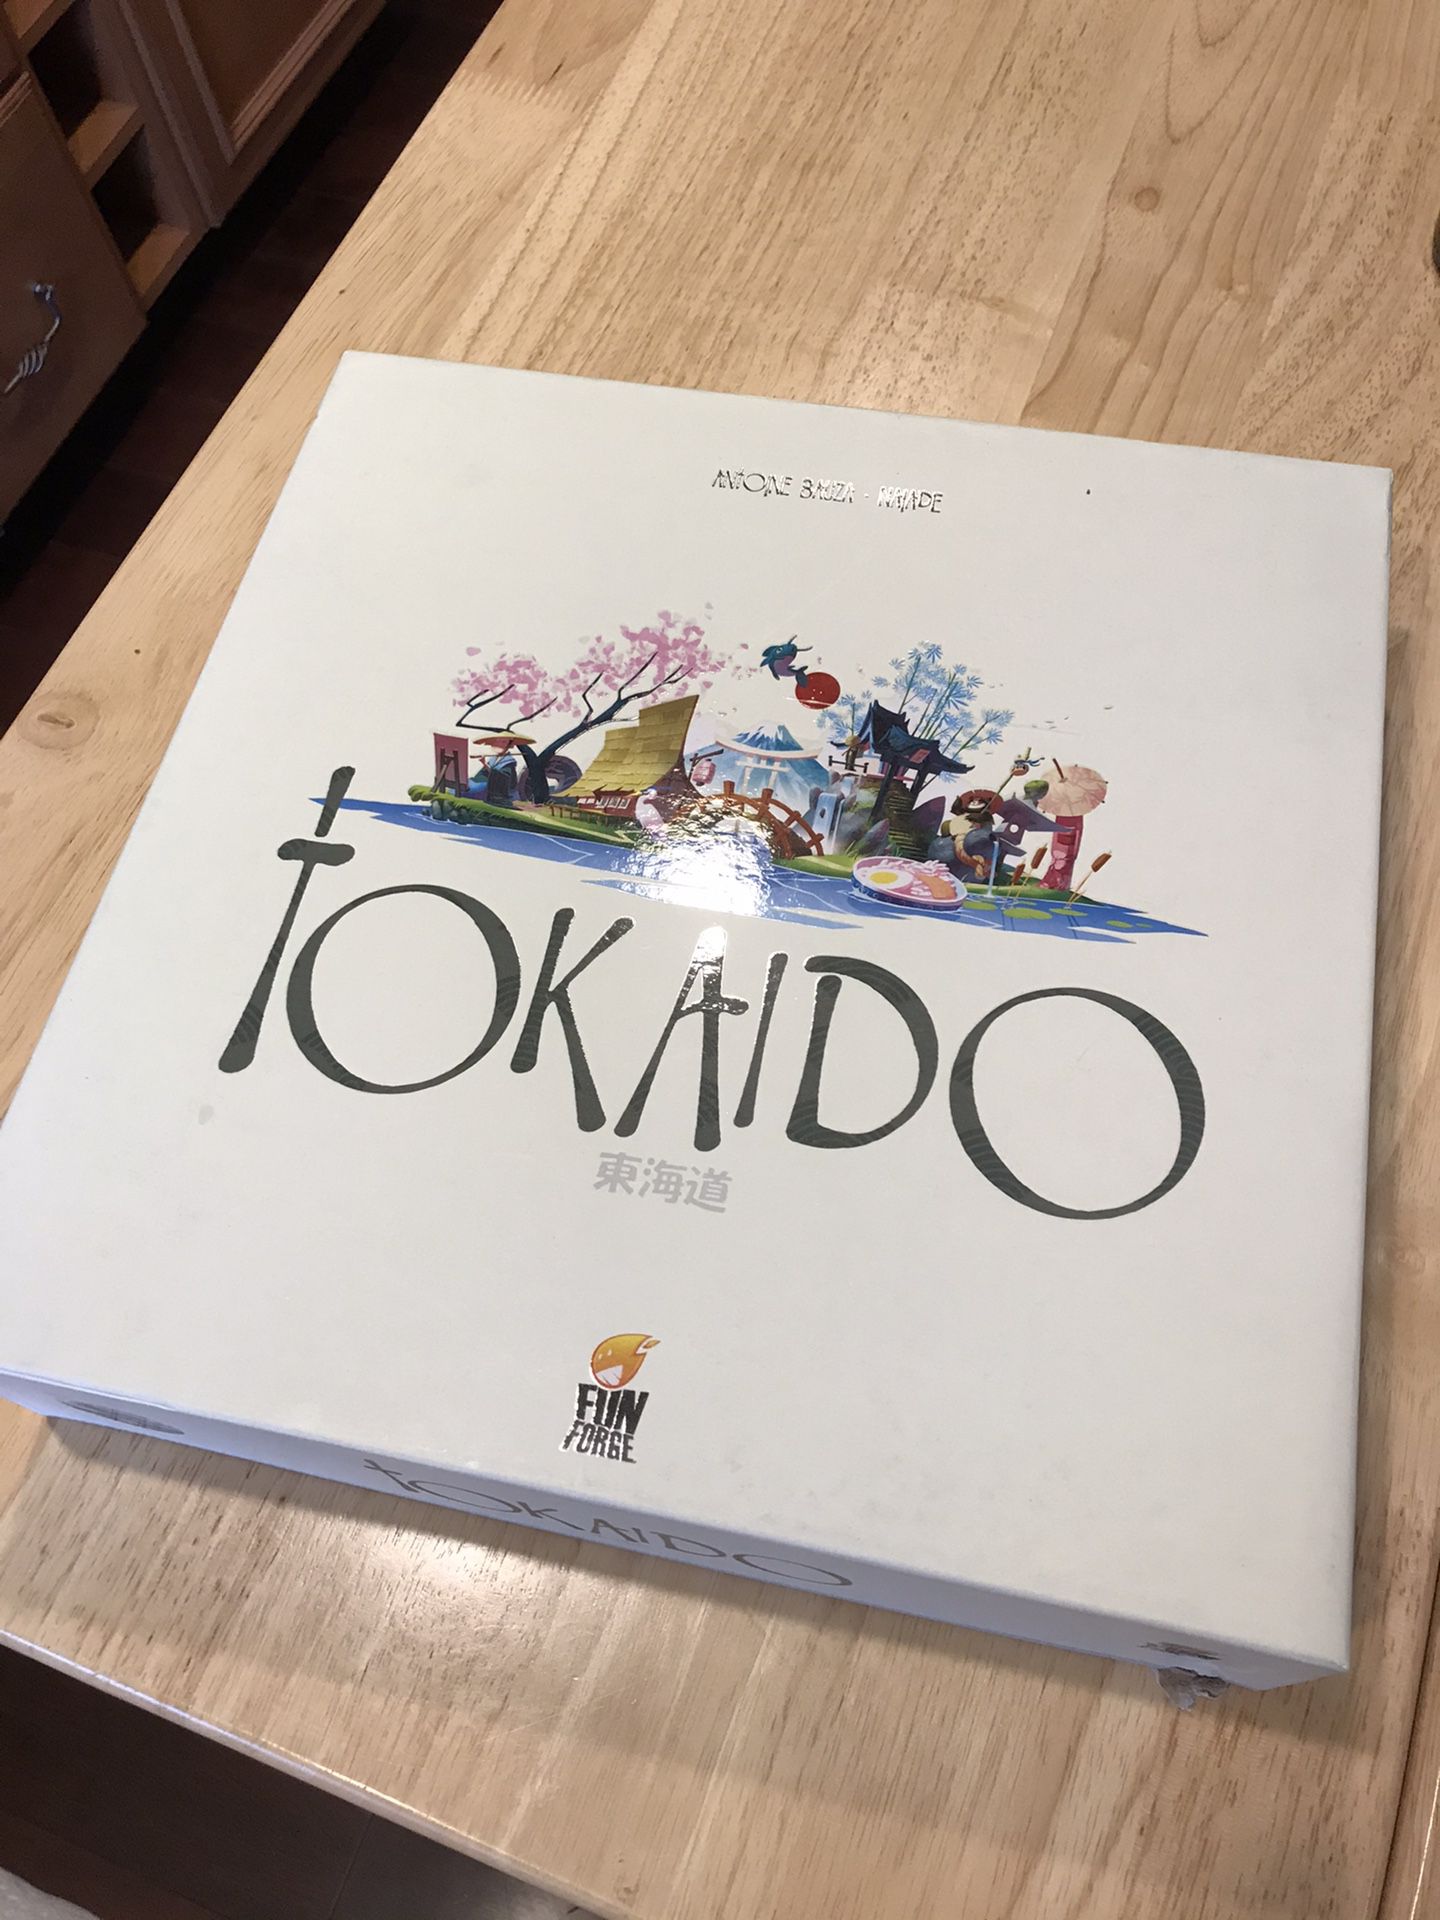 Tokaido - Award winning board game by Fun Forge